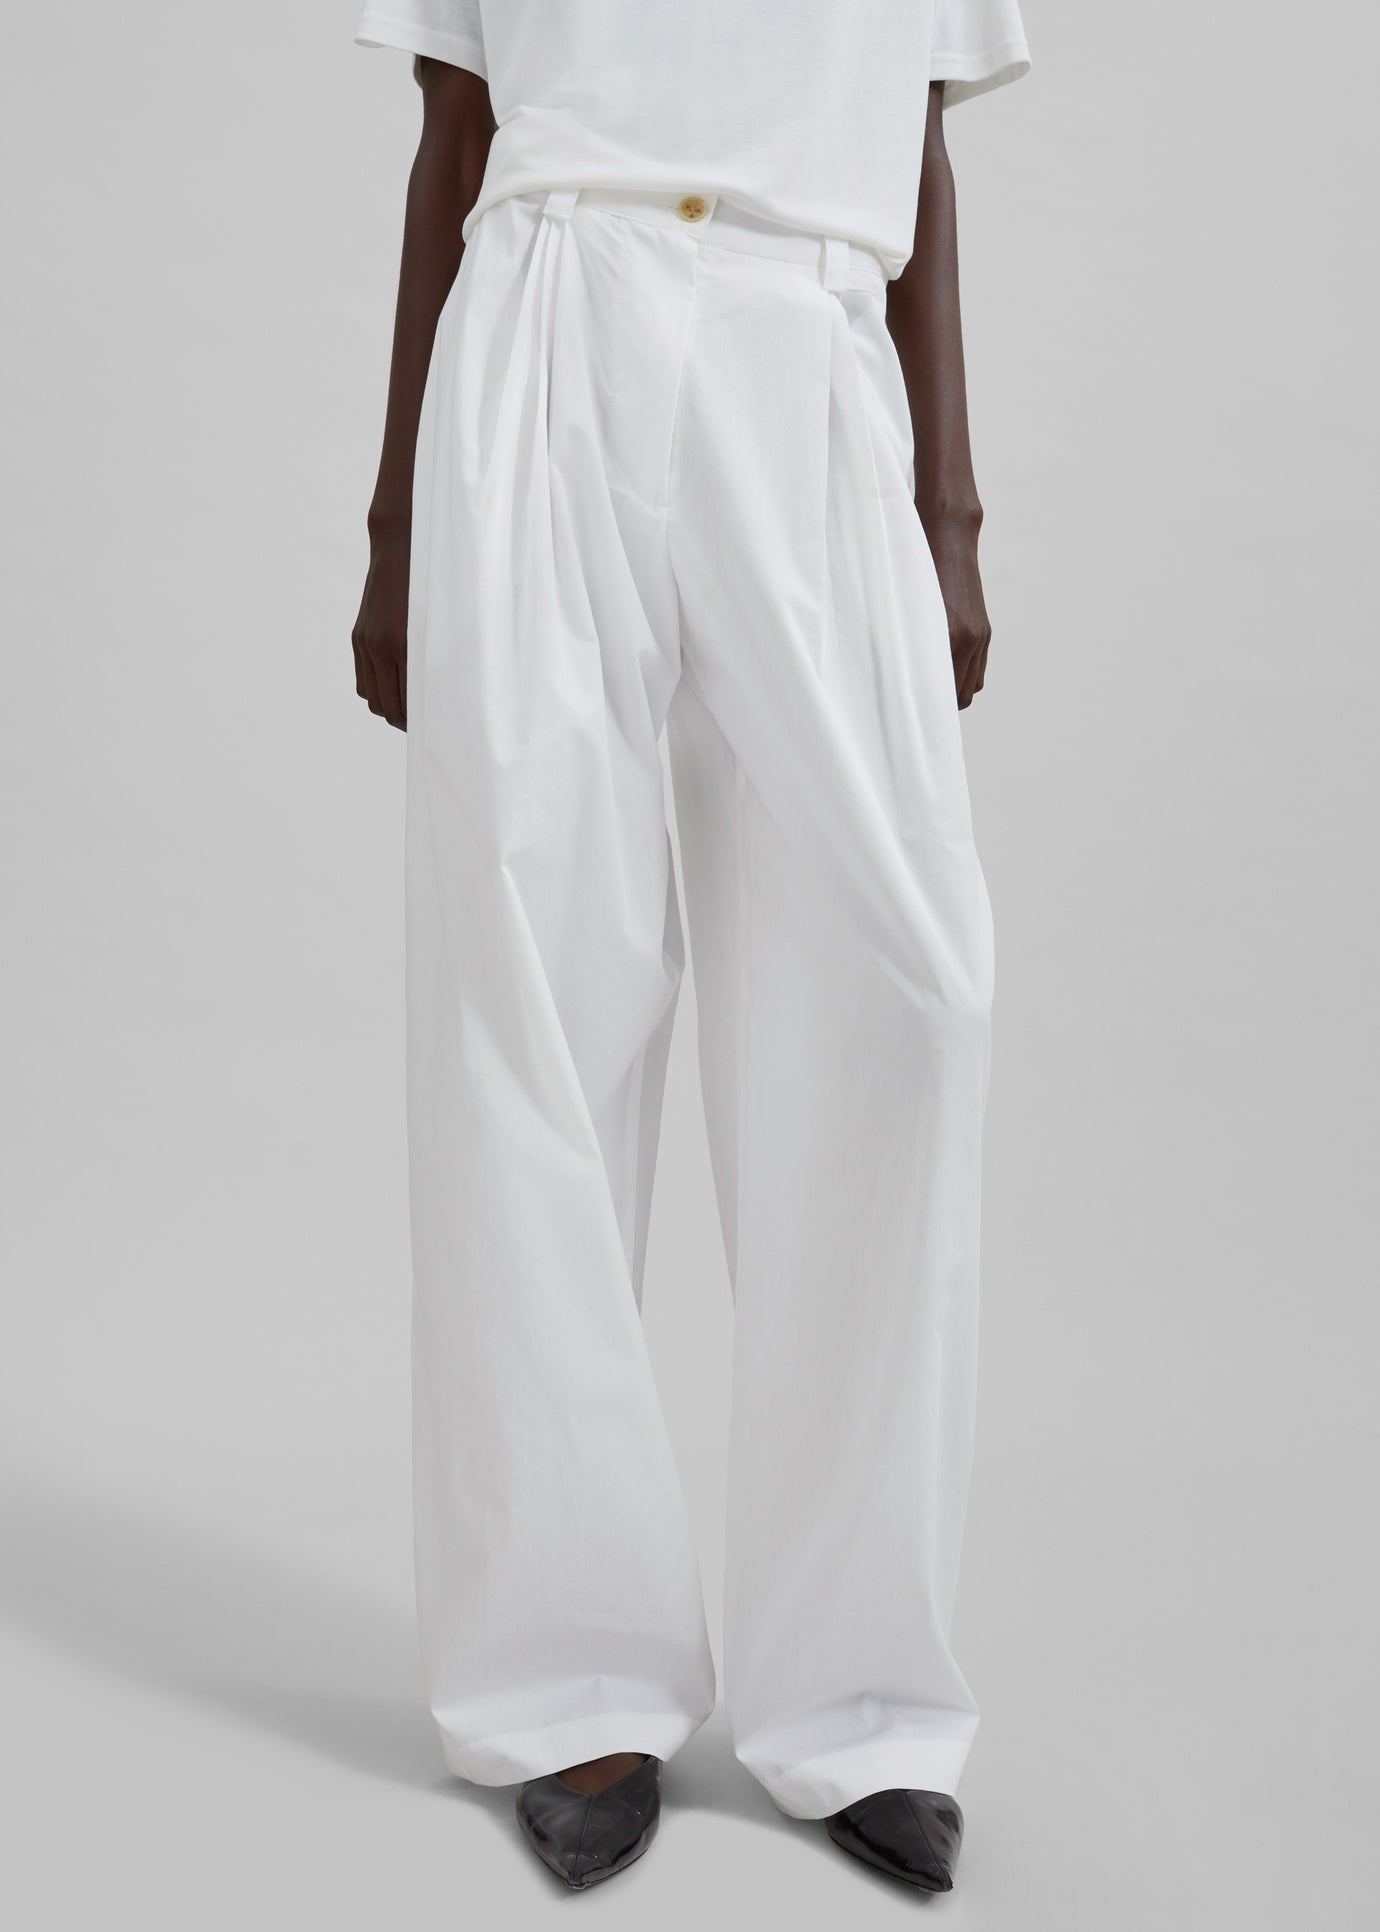 Lea Cotton Trousers - White